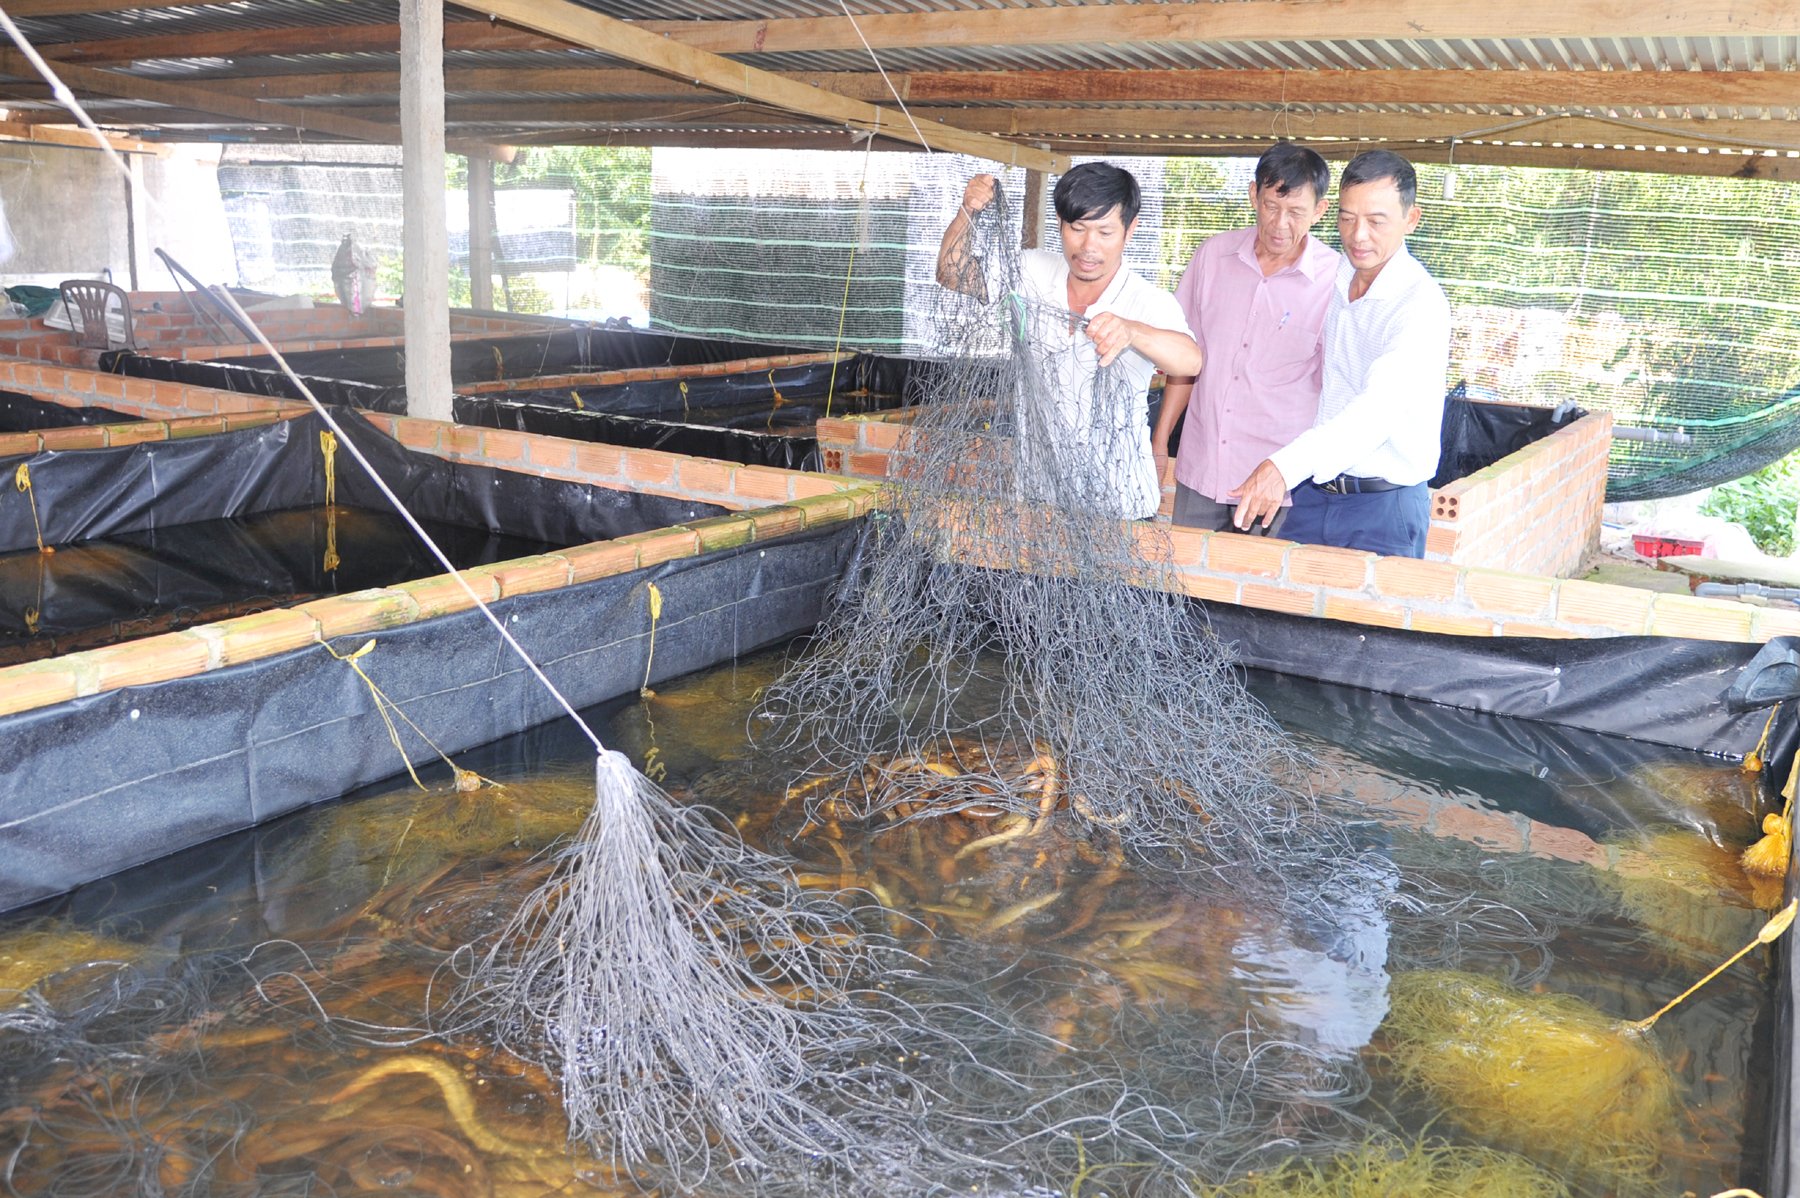 Mô hình nuôi lươn không bùn đang mang lại hiệu quả cao cho người nuôi. Ảnh: KS.